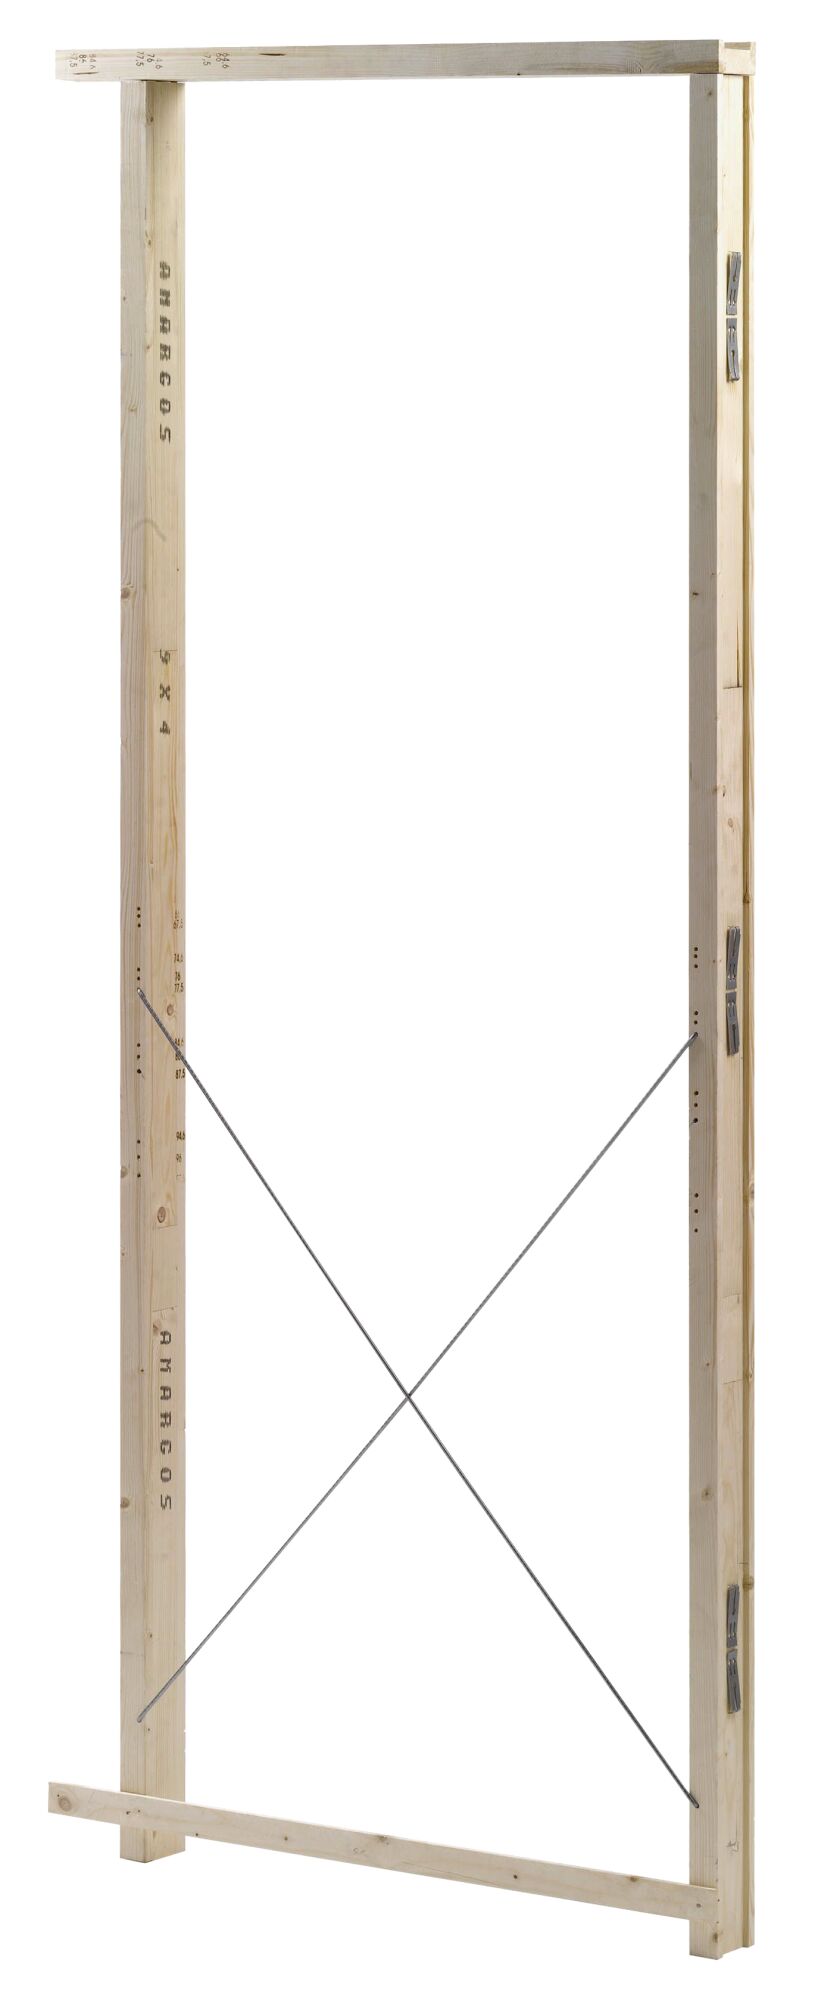 Premarco para madera de 7 x 210 y 3 cm grosor